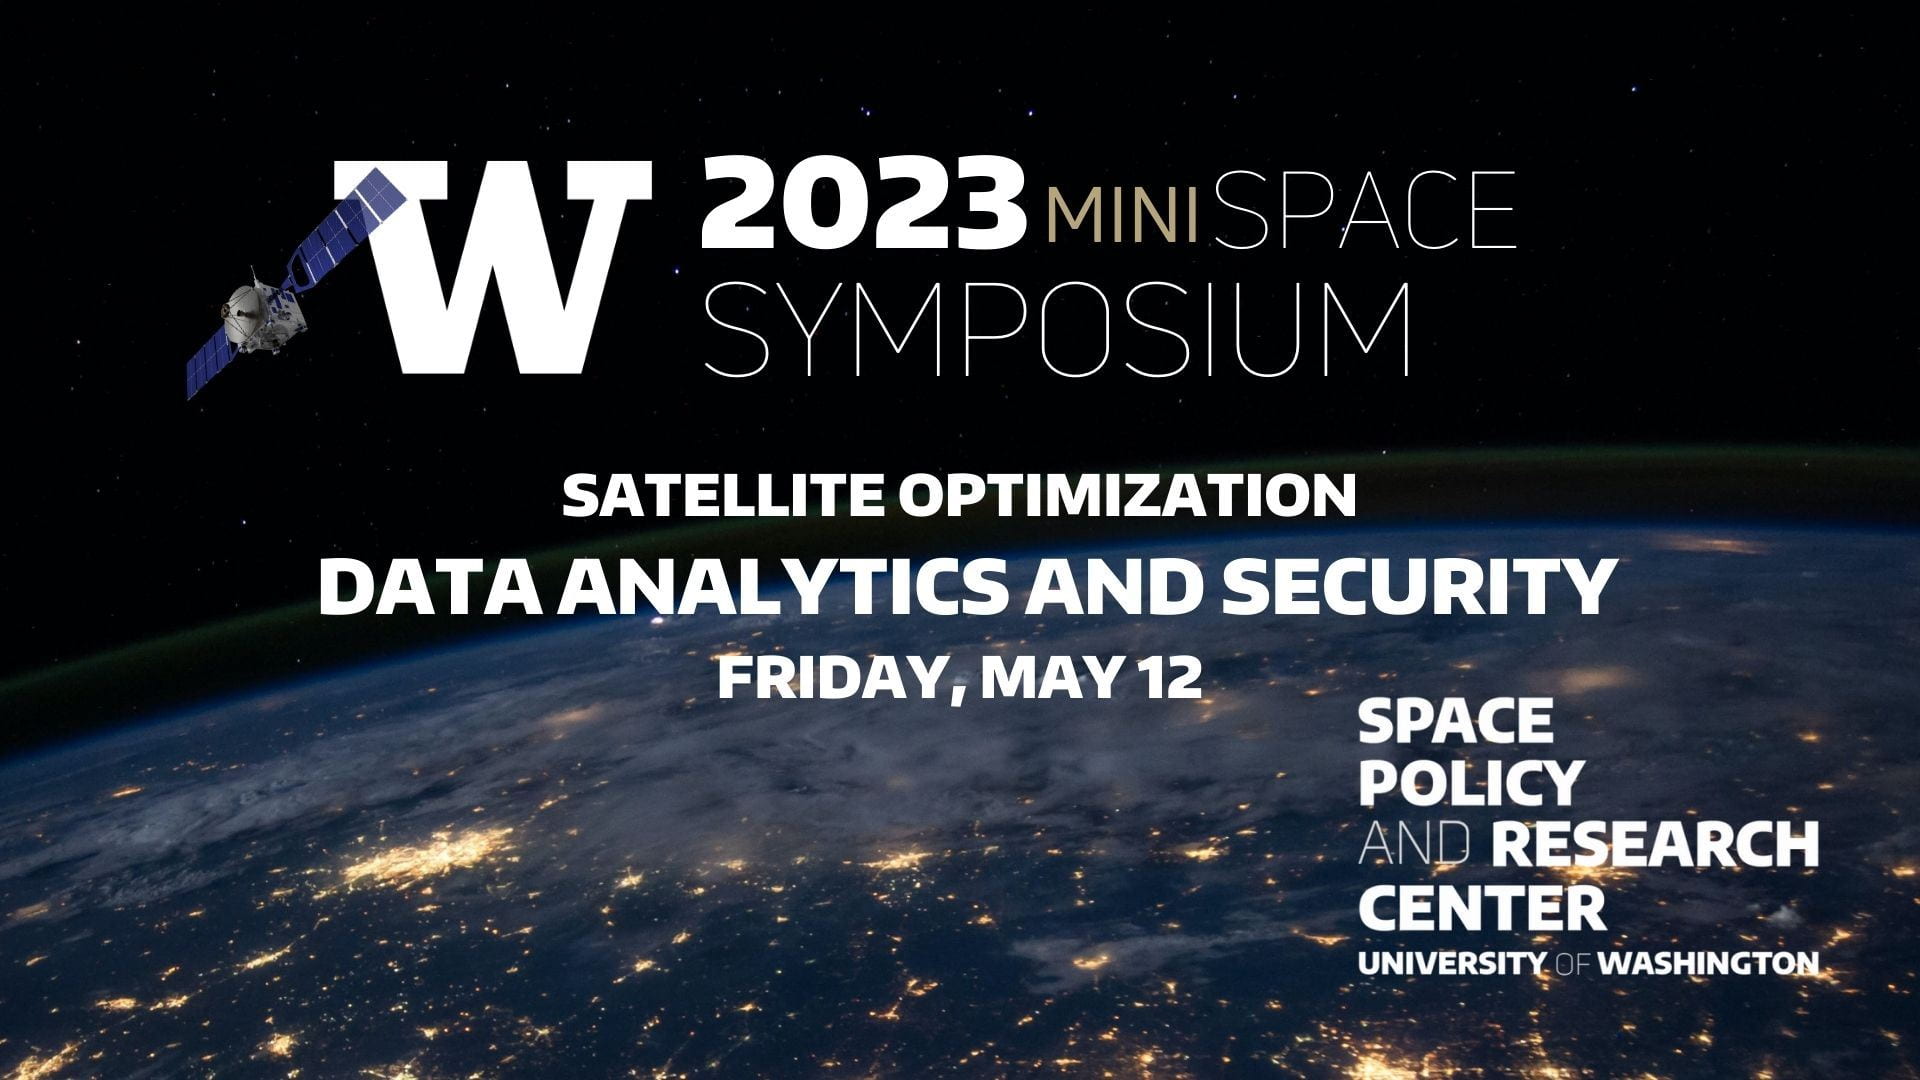 Satellite image representing the 2023 Mini Space Symposium